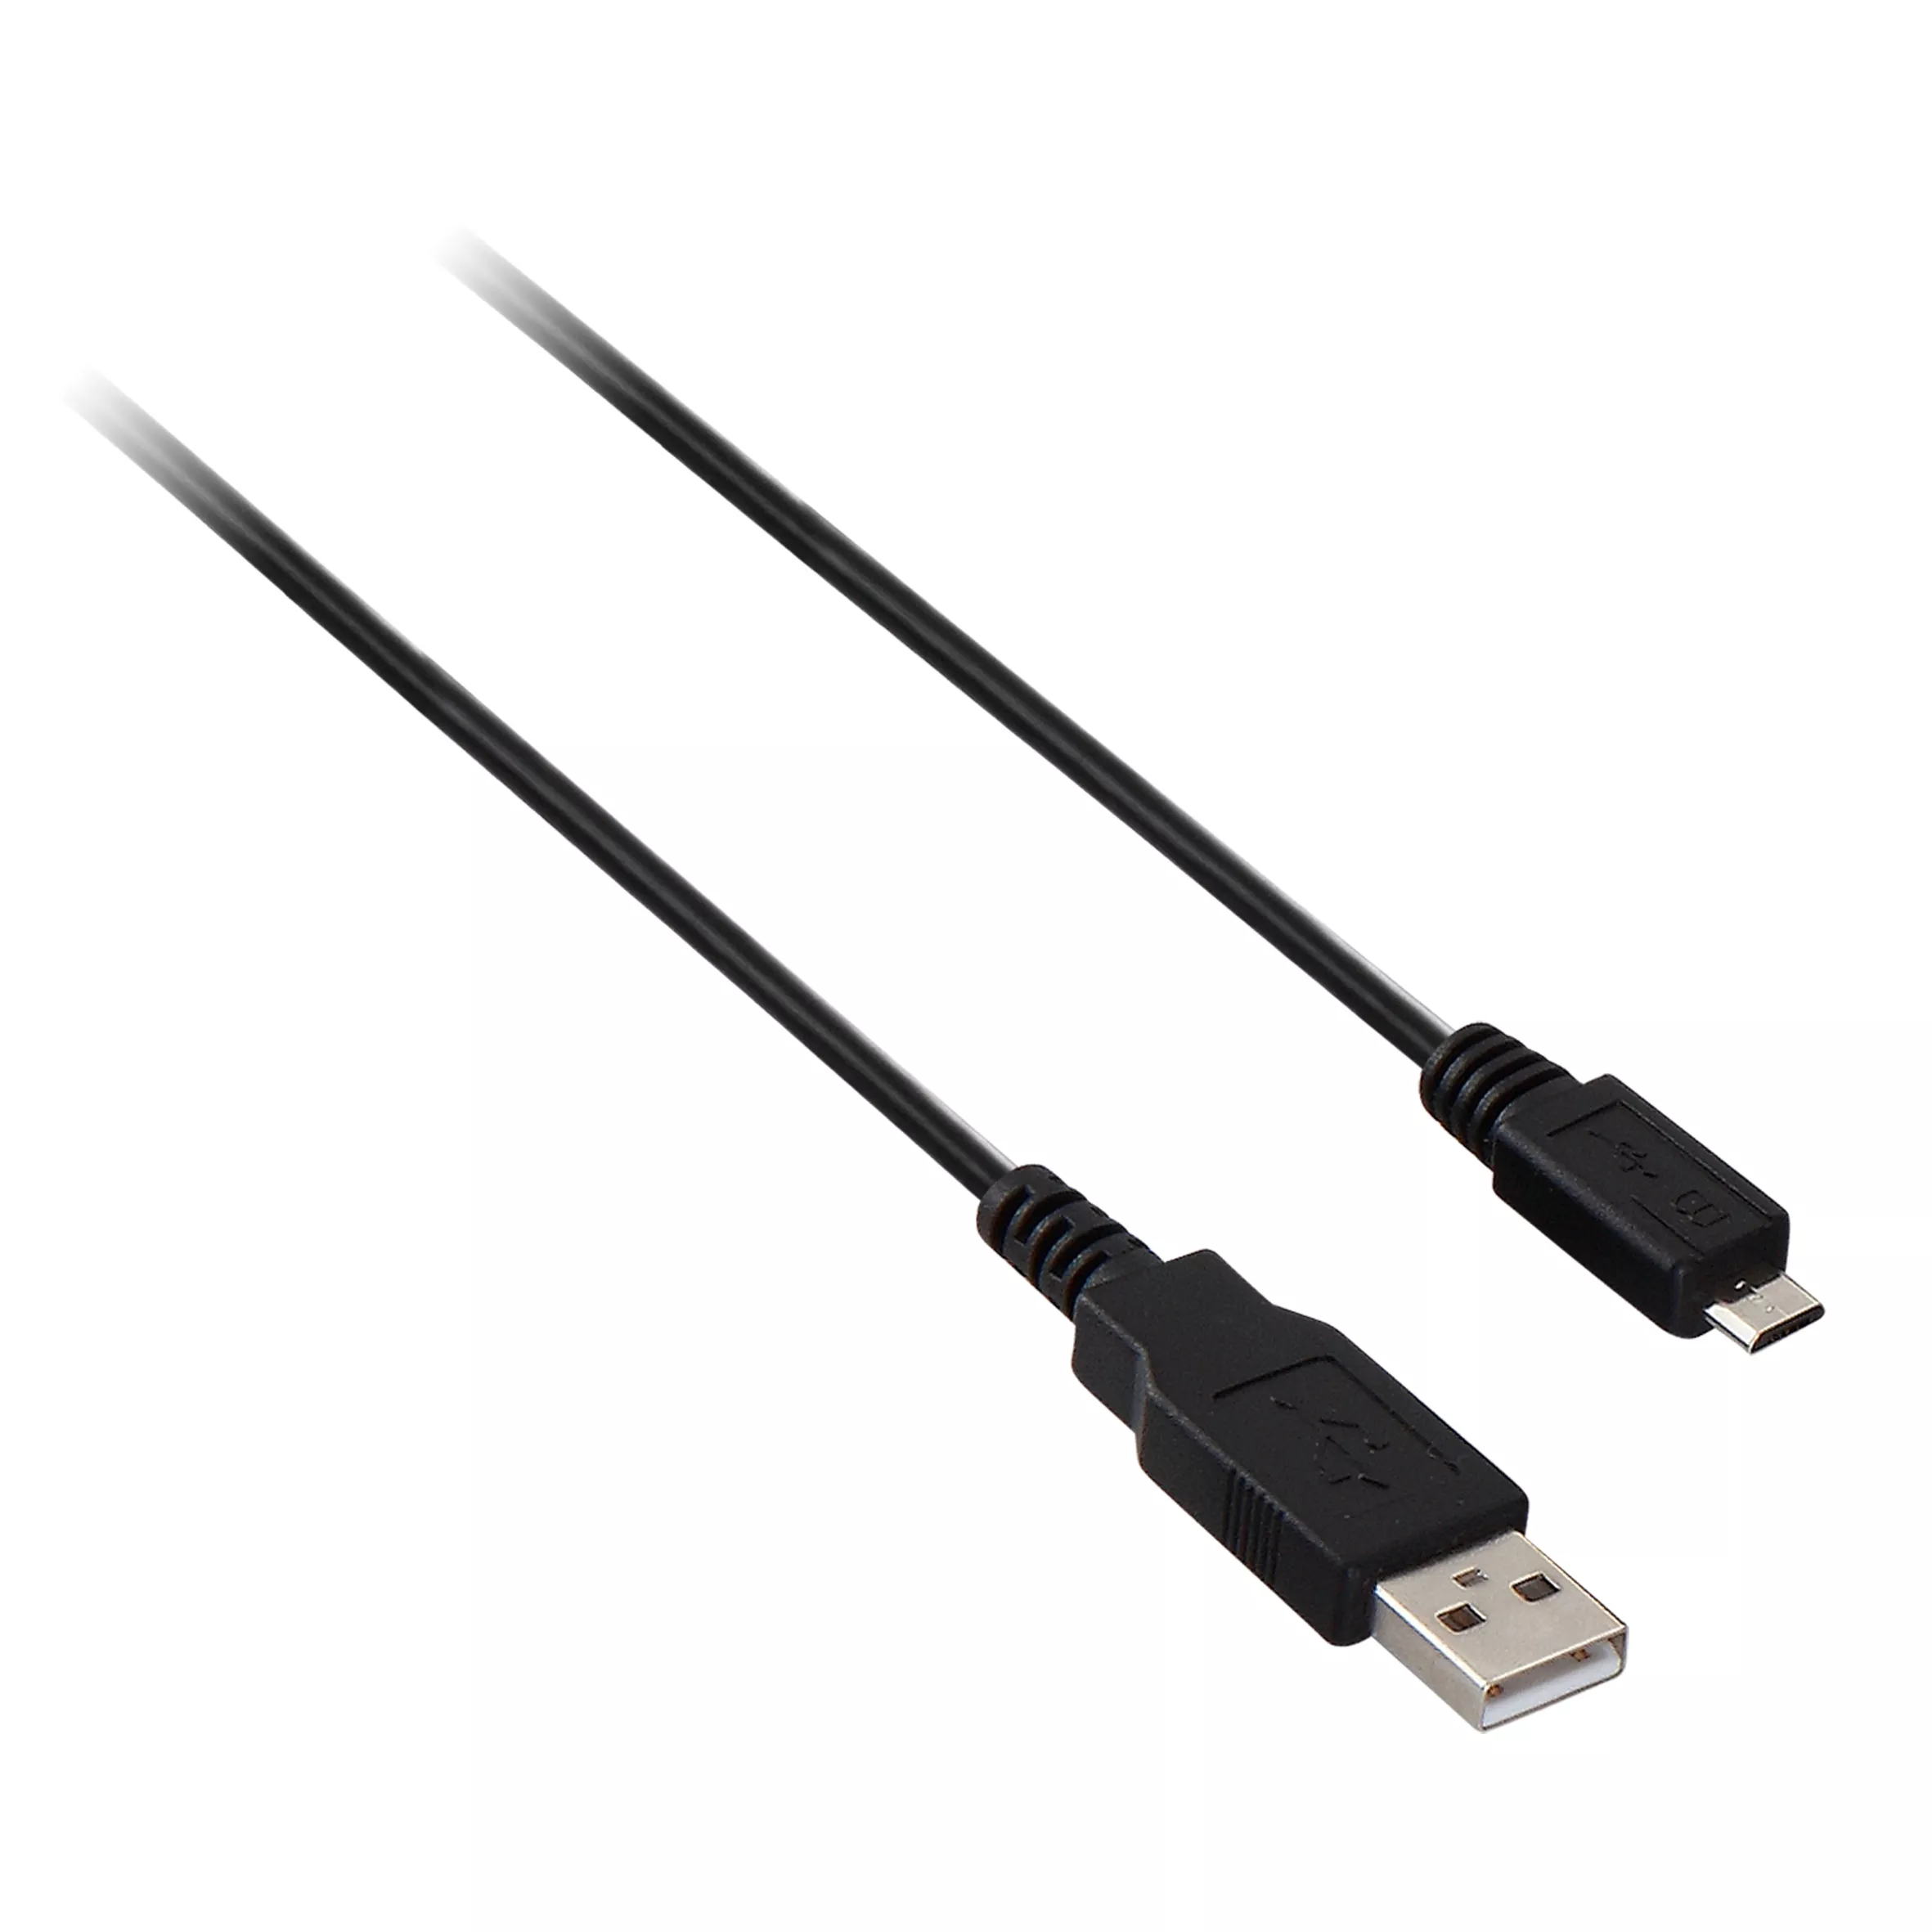 Achat V7 Câble USB 2.0 A mâle vers Micro USB mâle, noir 1m 3.3ft au meilleur prix